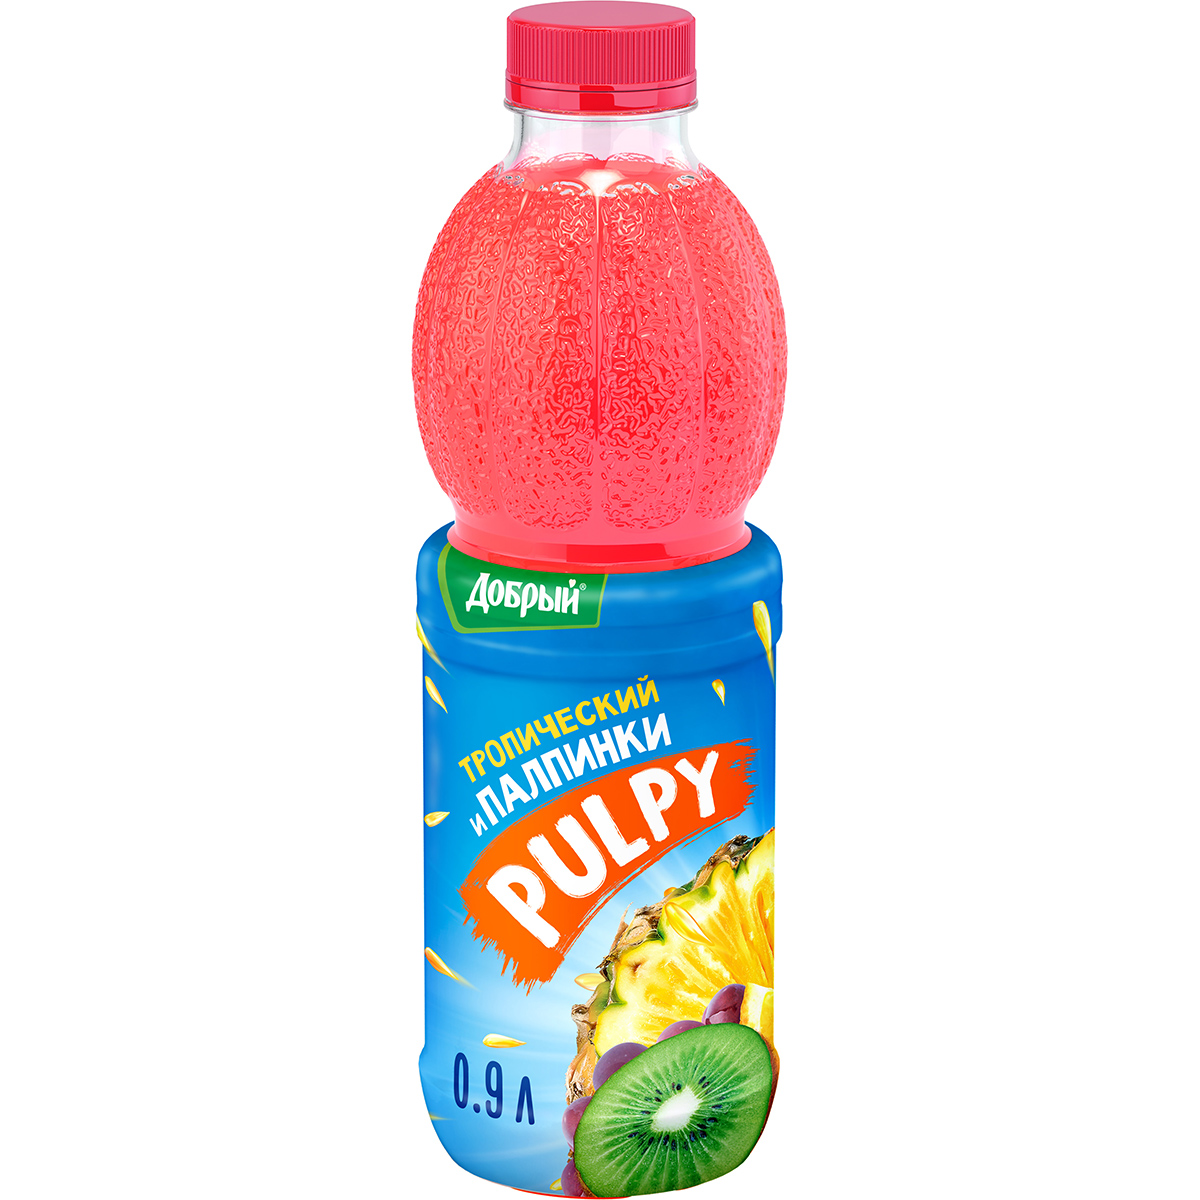 Напиток Pulpy сокосодержащий Тропический с мякотью 0,9 л напиток добрый сокосодержащий pulpy вишня 0 45 л